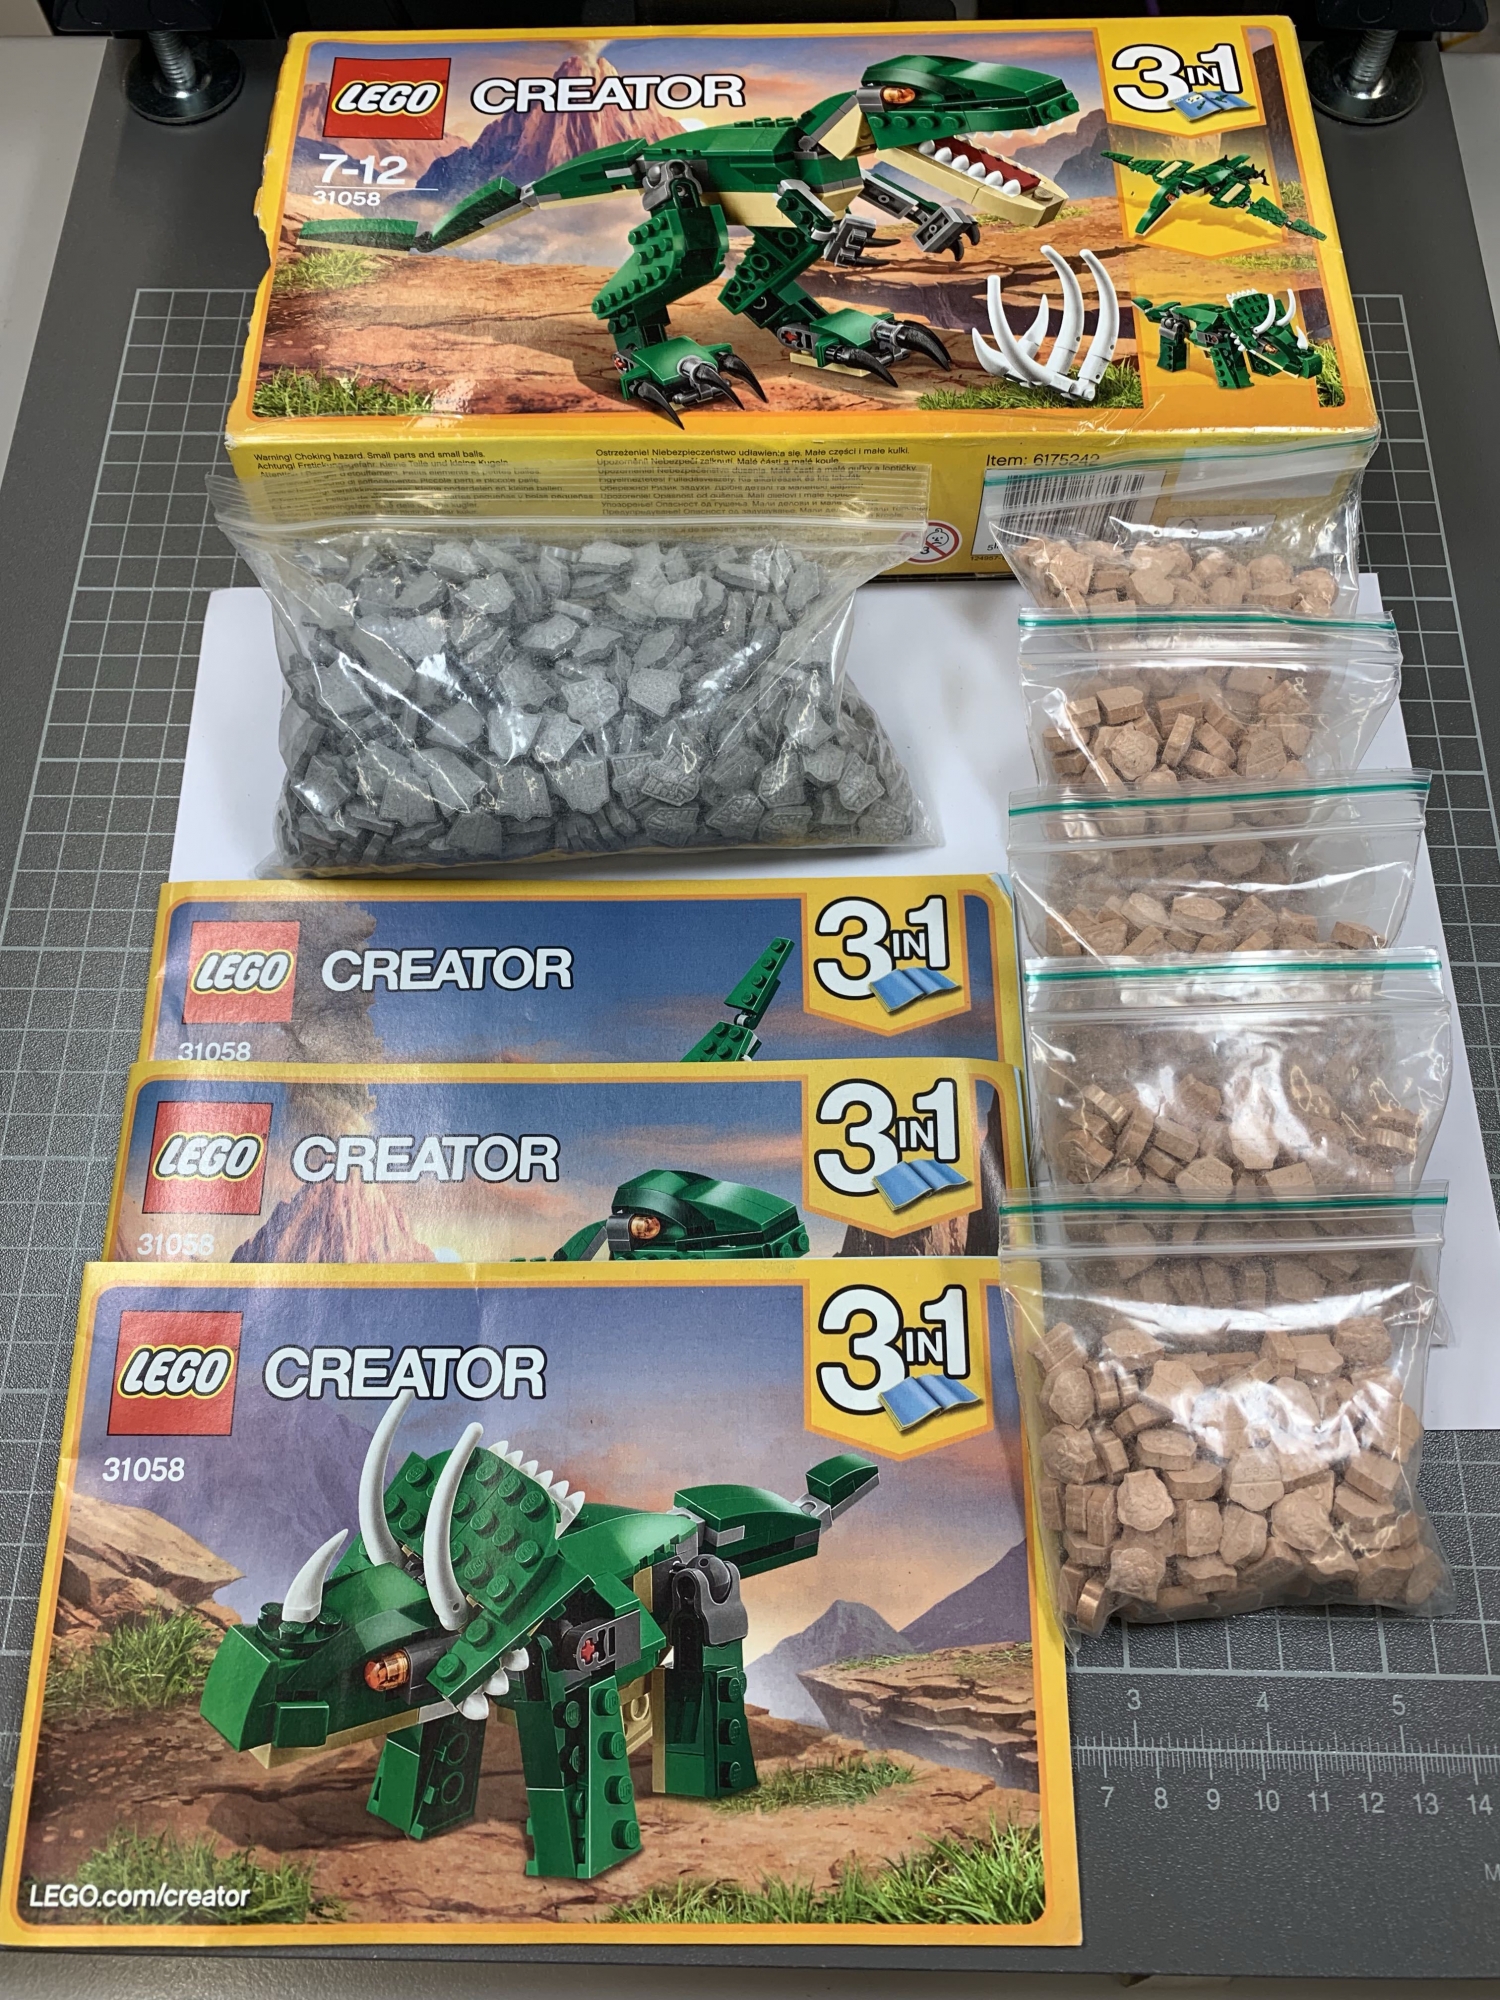 Les boîtes ne contenaient pas de pièces de Lego.